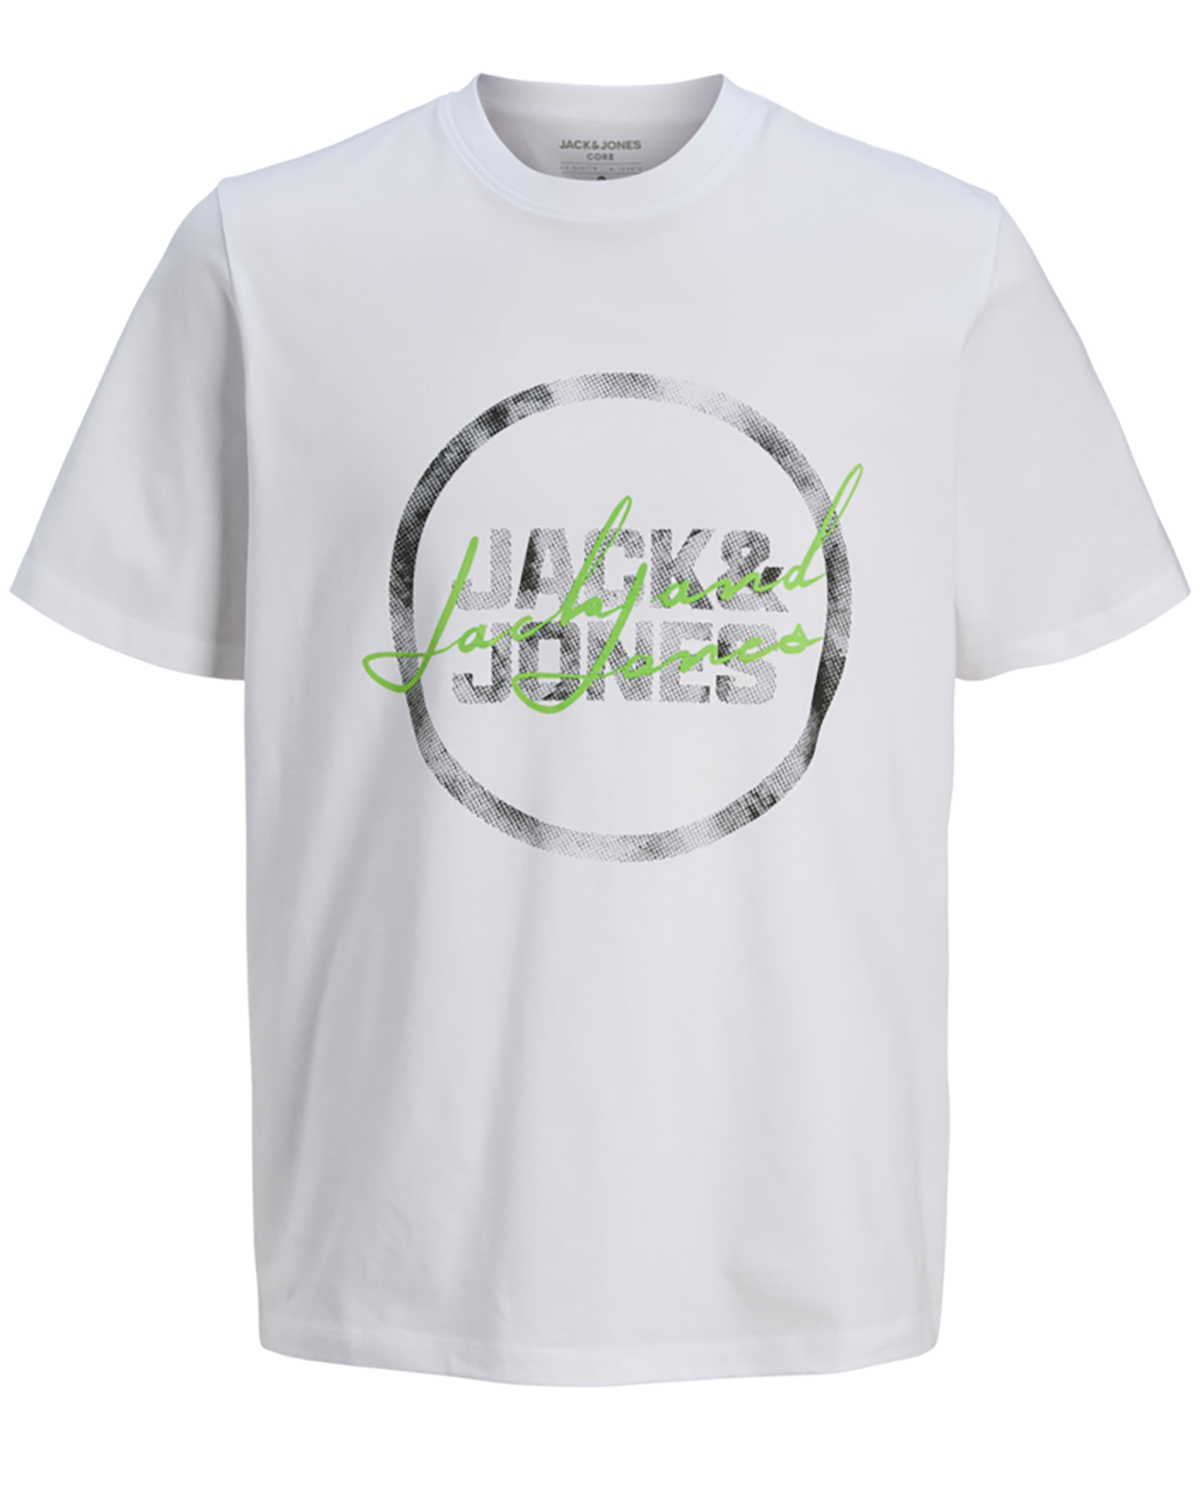 Jack & Jones t-shirt s/s, Script tee, hvid - 176,S+,S